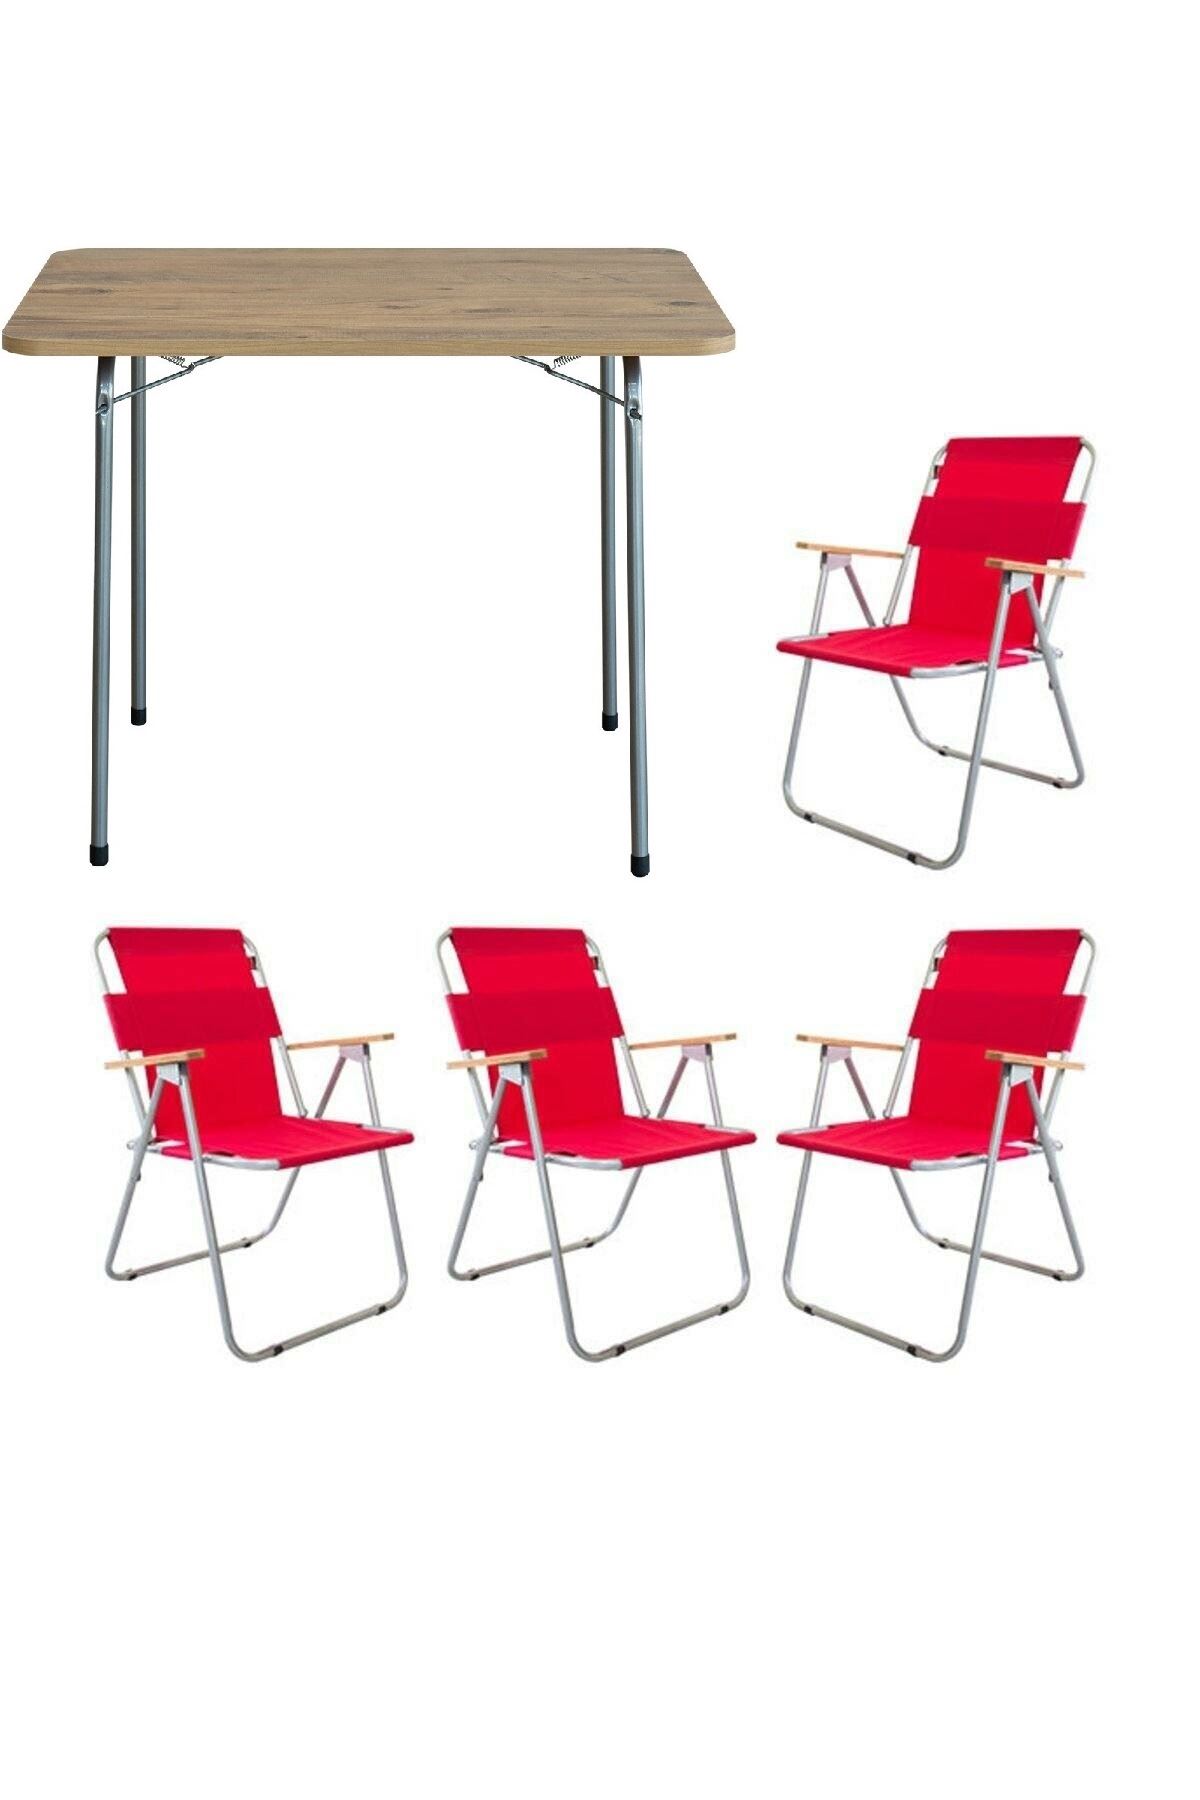 Bofigo 60x80 Çam Katlanır Masa + 4 Adet Katlanır Sandalye Kamp Seti Bahçe Balkon Takımı Kırmızı